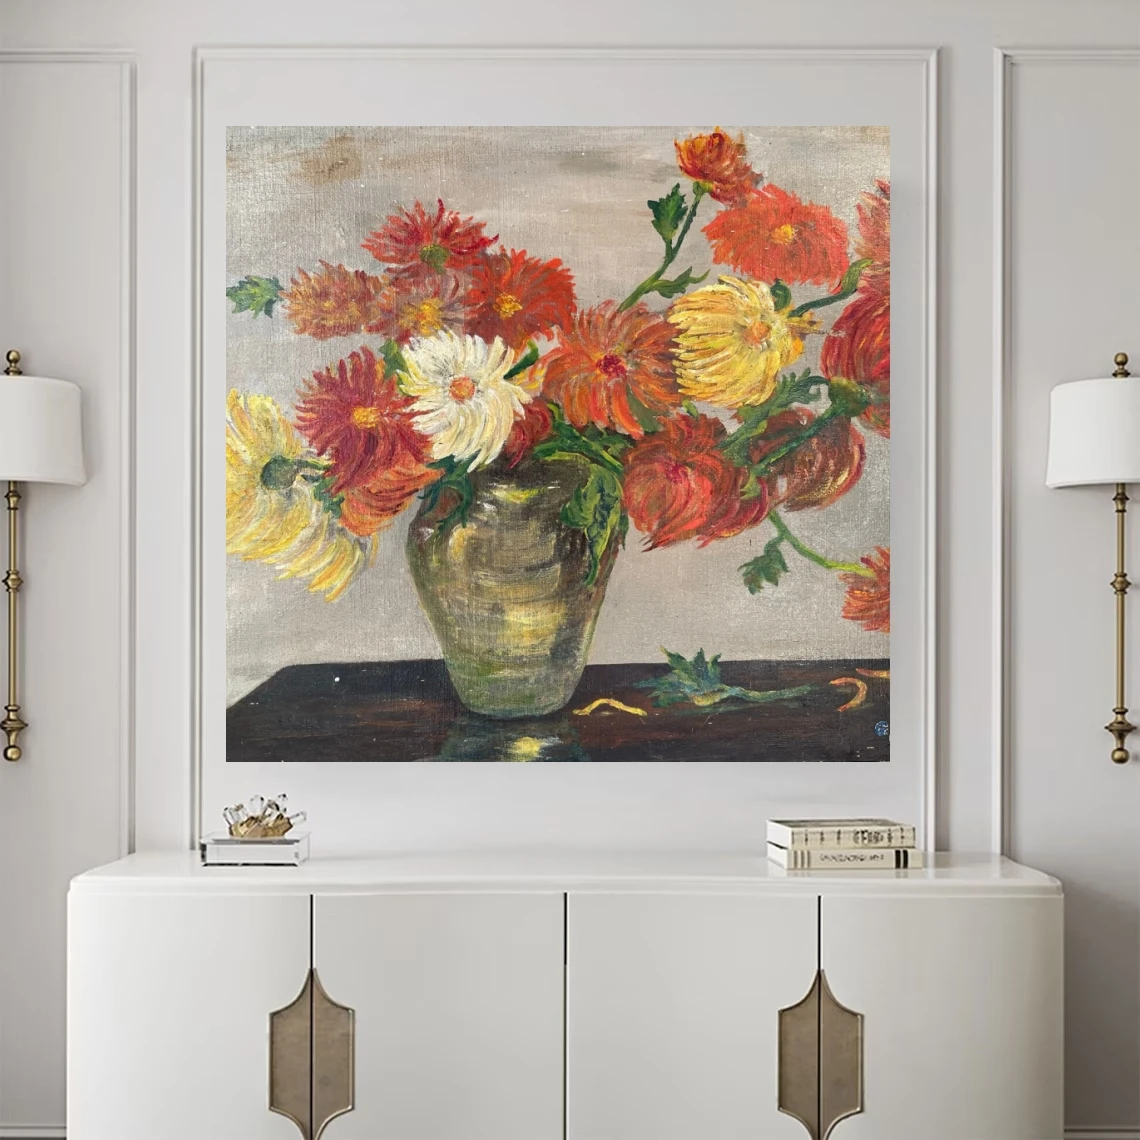 Peinture d'huile frorale vintage sur toile chrysanthémum impressionniste chrysanthemums natures d'huile morte pour cuisine, salle à manger de décoration murale de la salle à manger